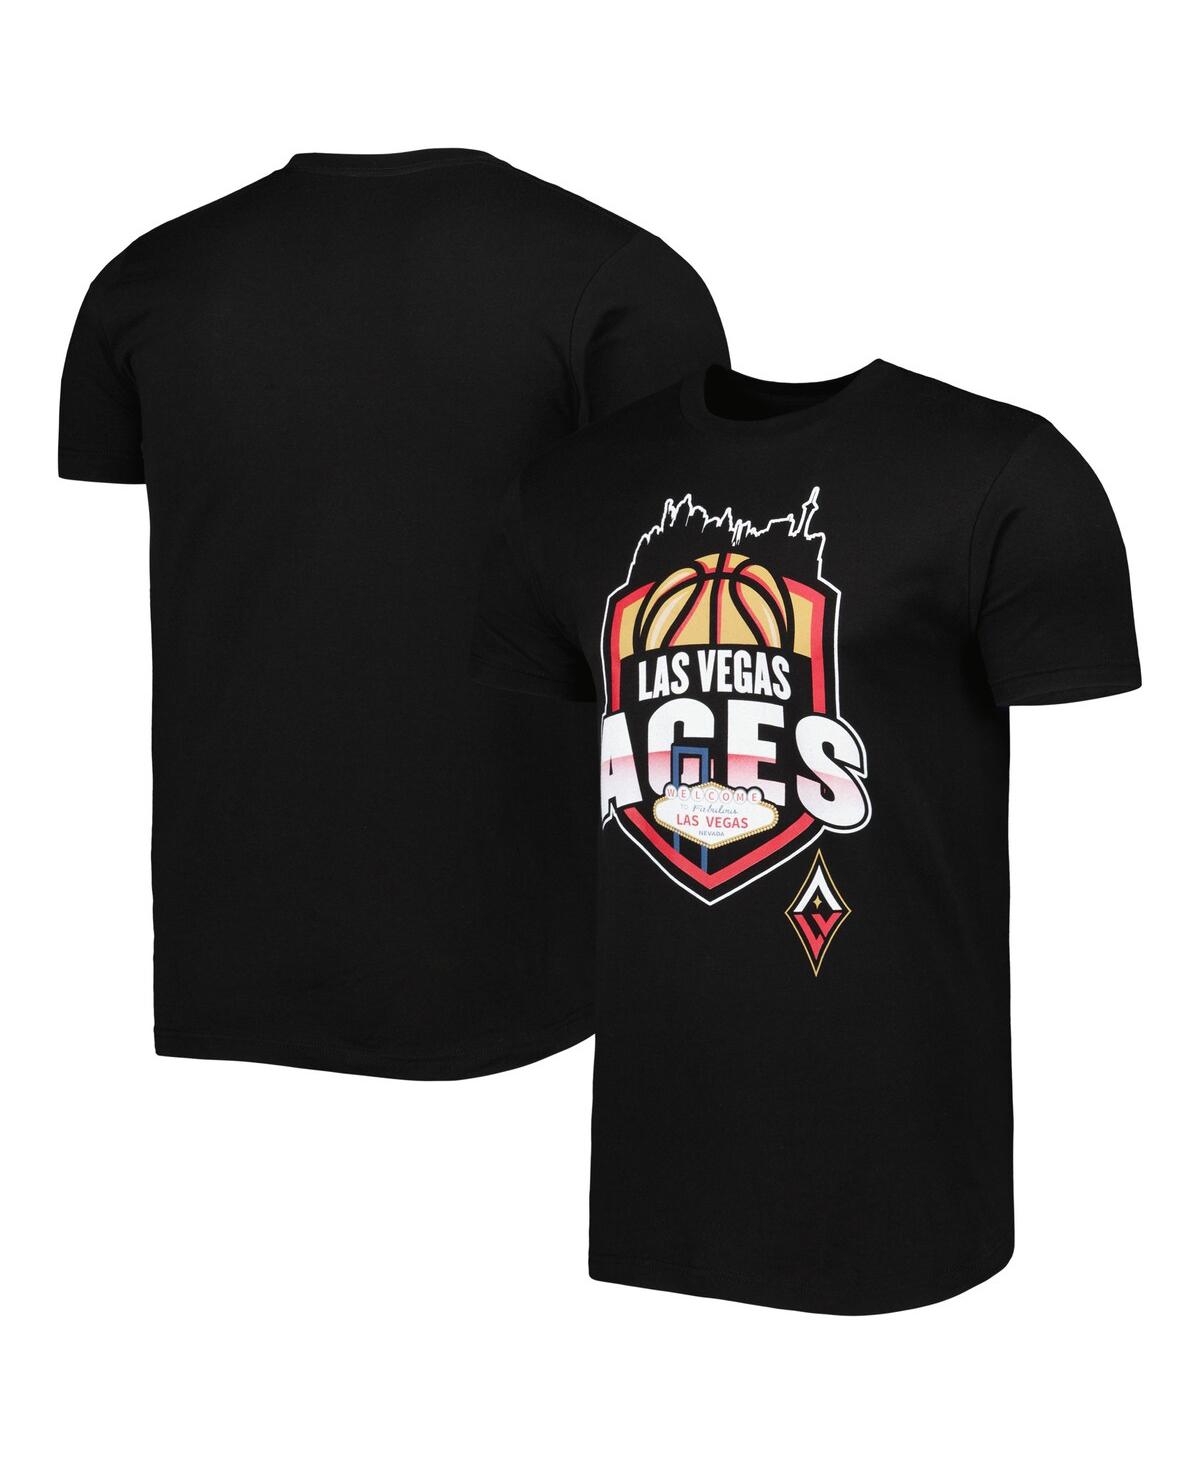 Men's and Women's Stadium Essentials Black Las Vegas Aces Crest T-shirt - Black